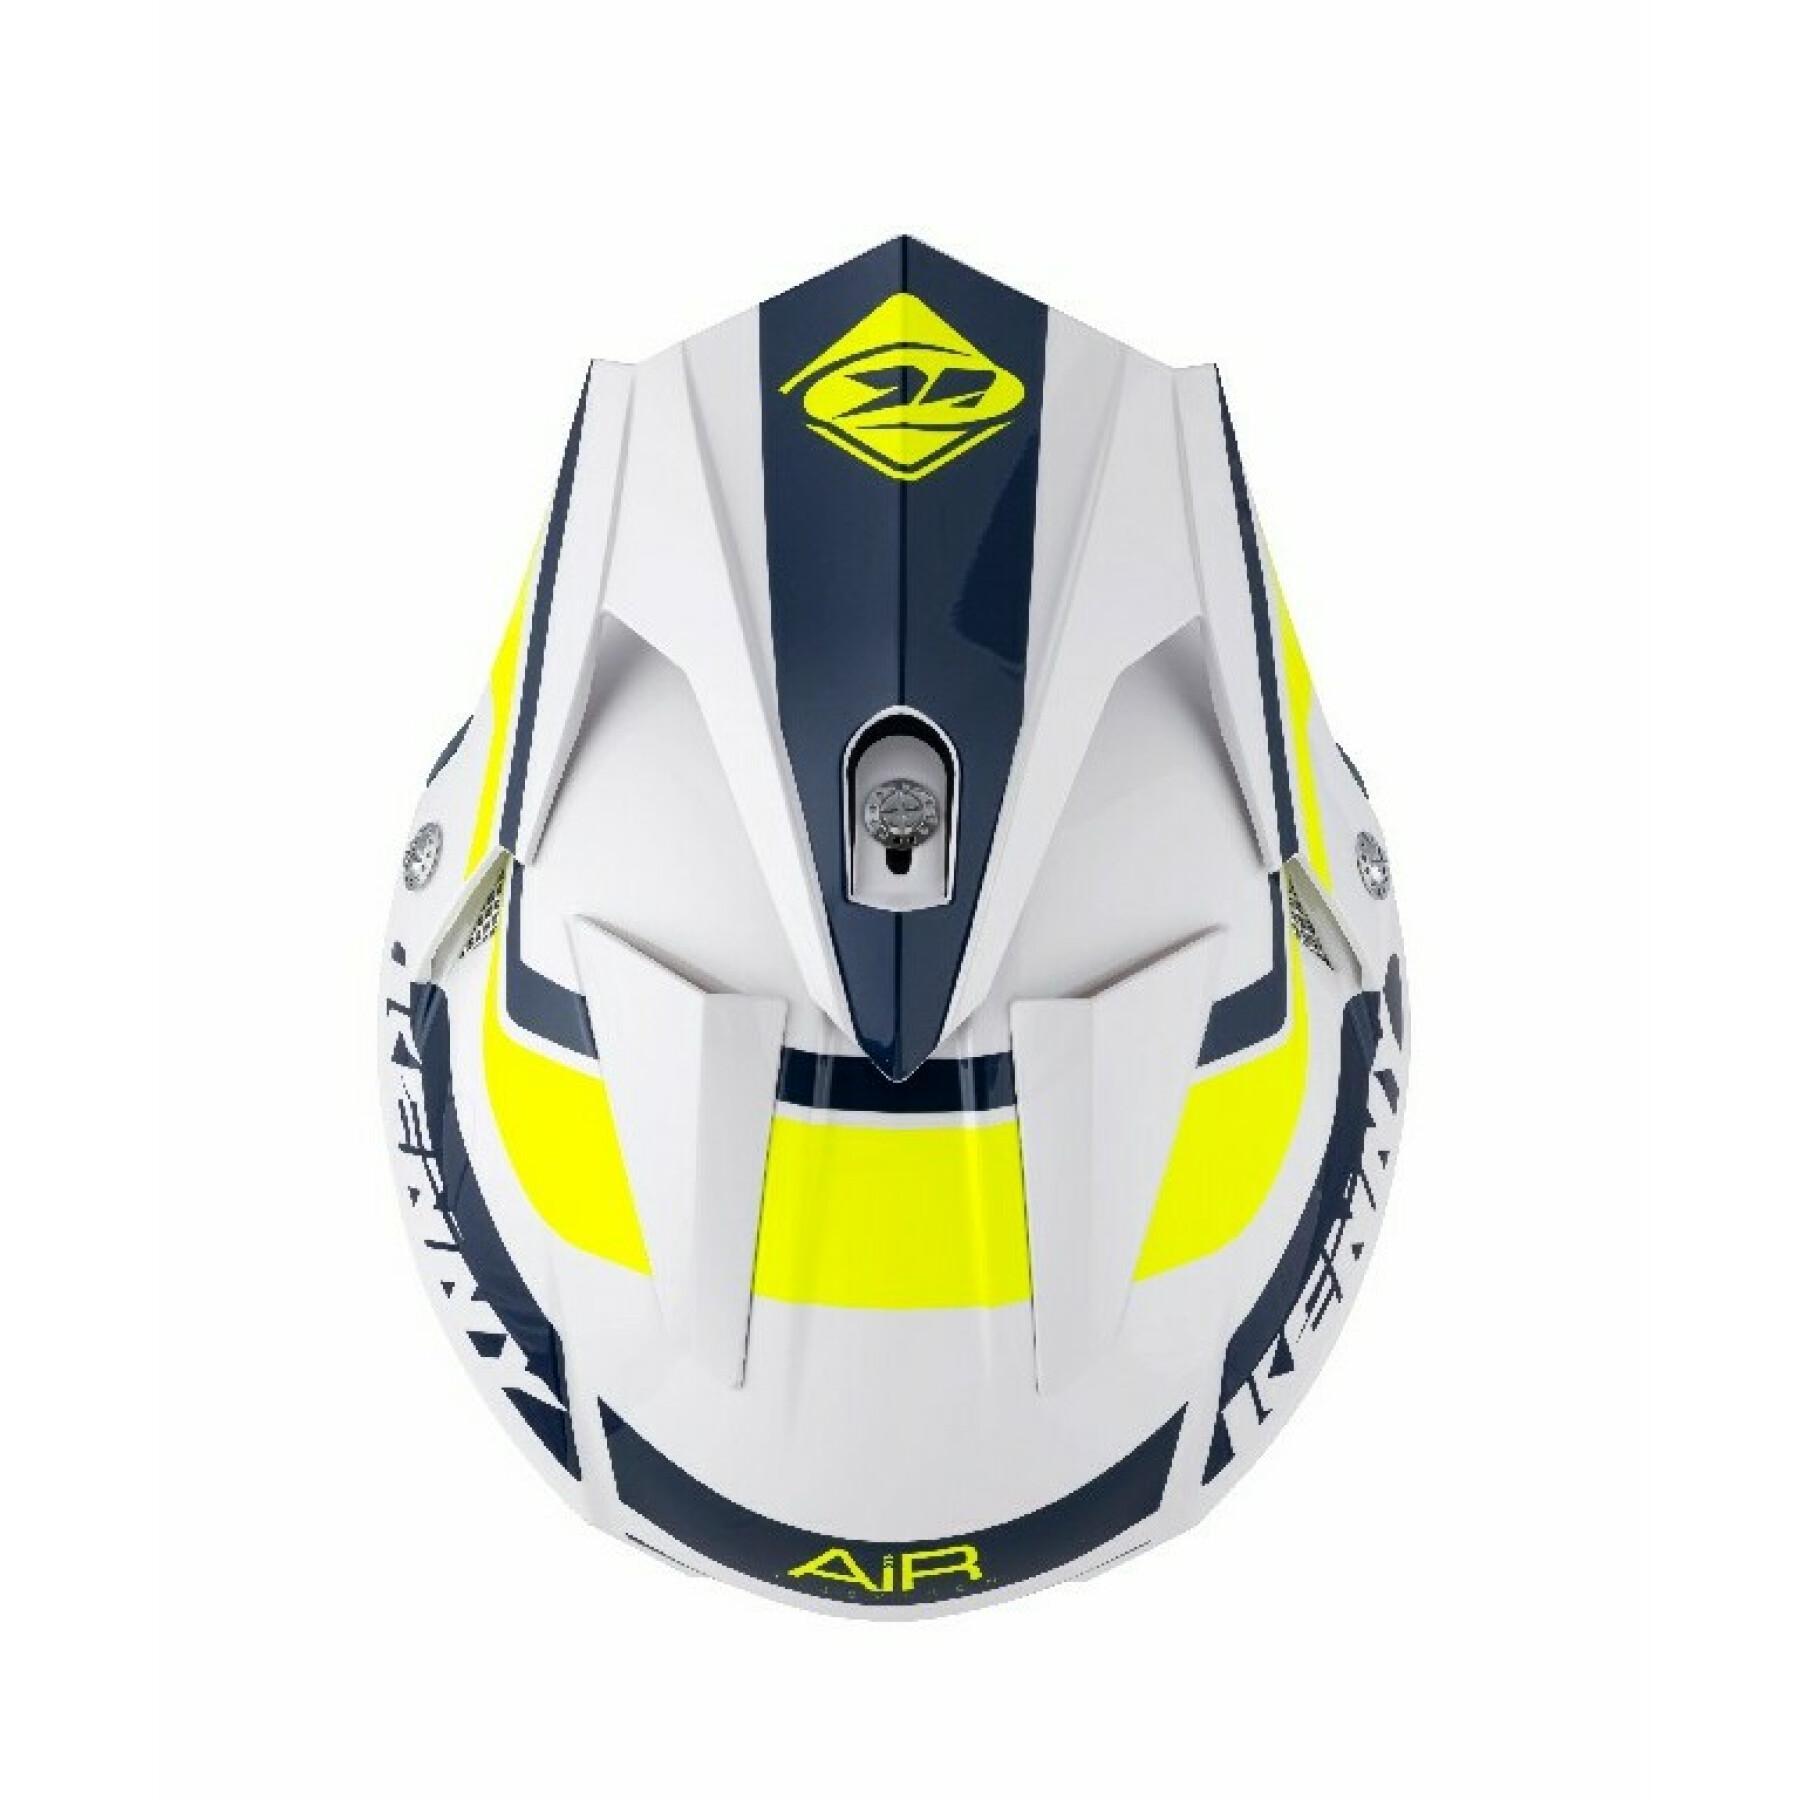 Motorcycle helmet Kenny trial air graphic